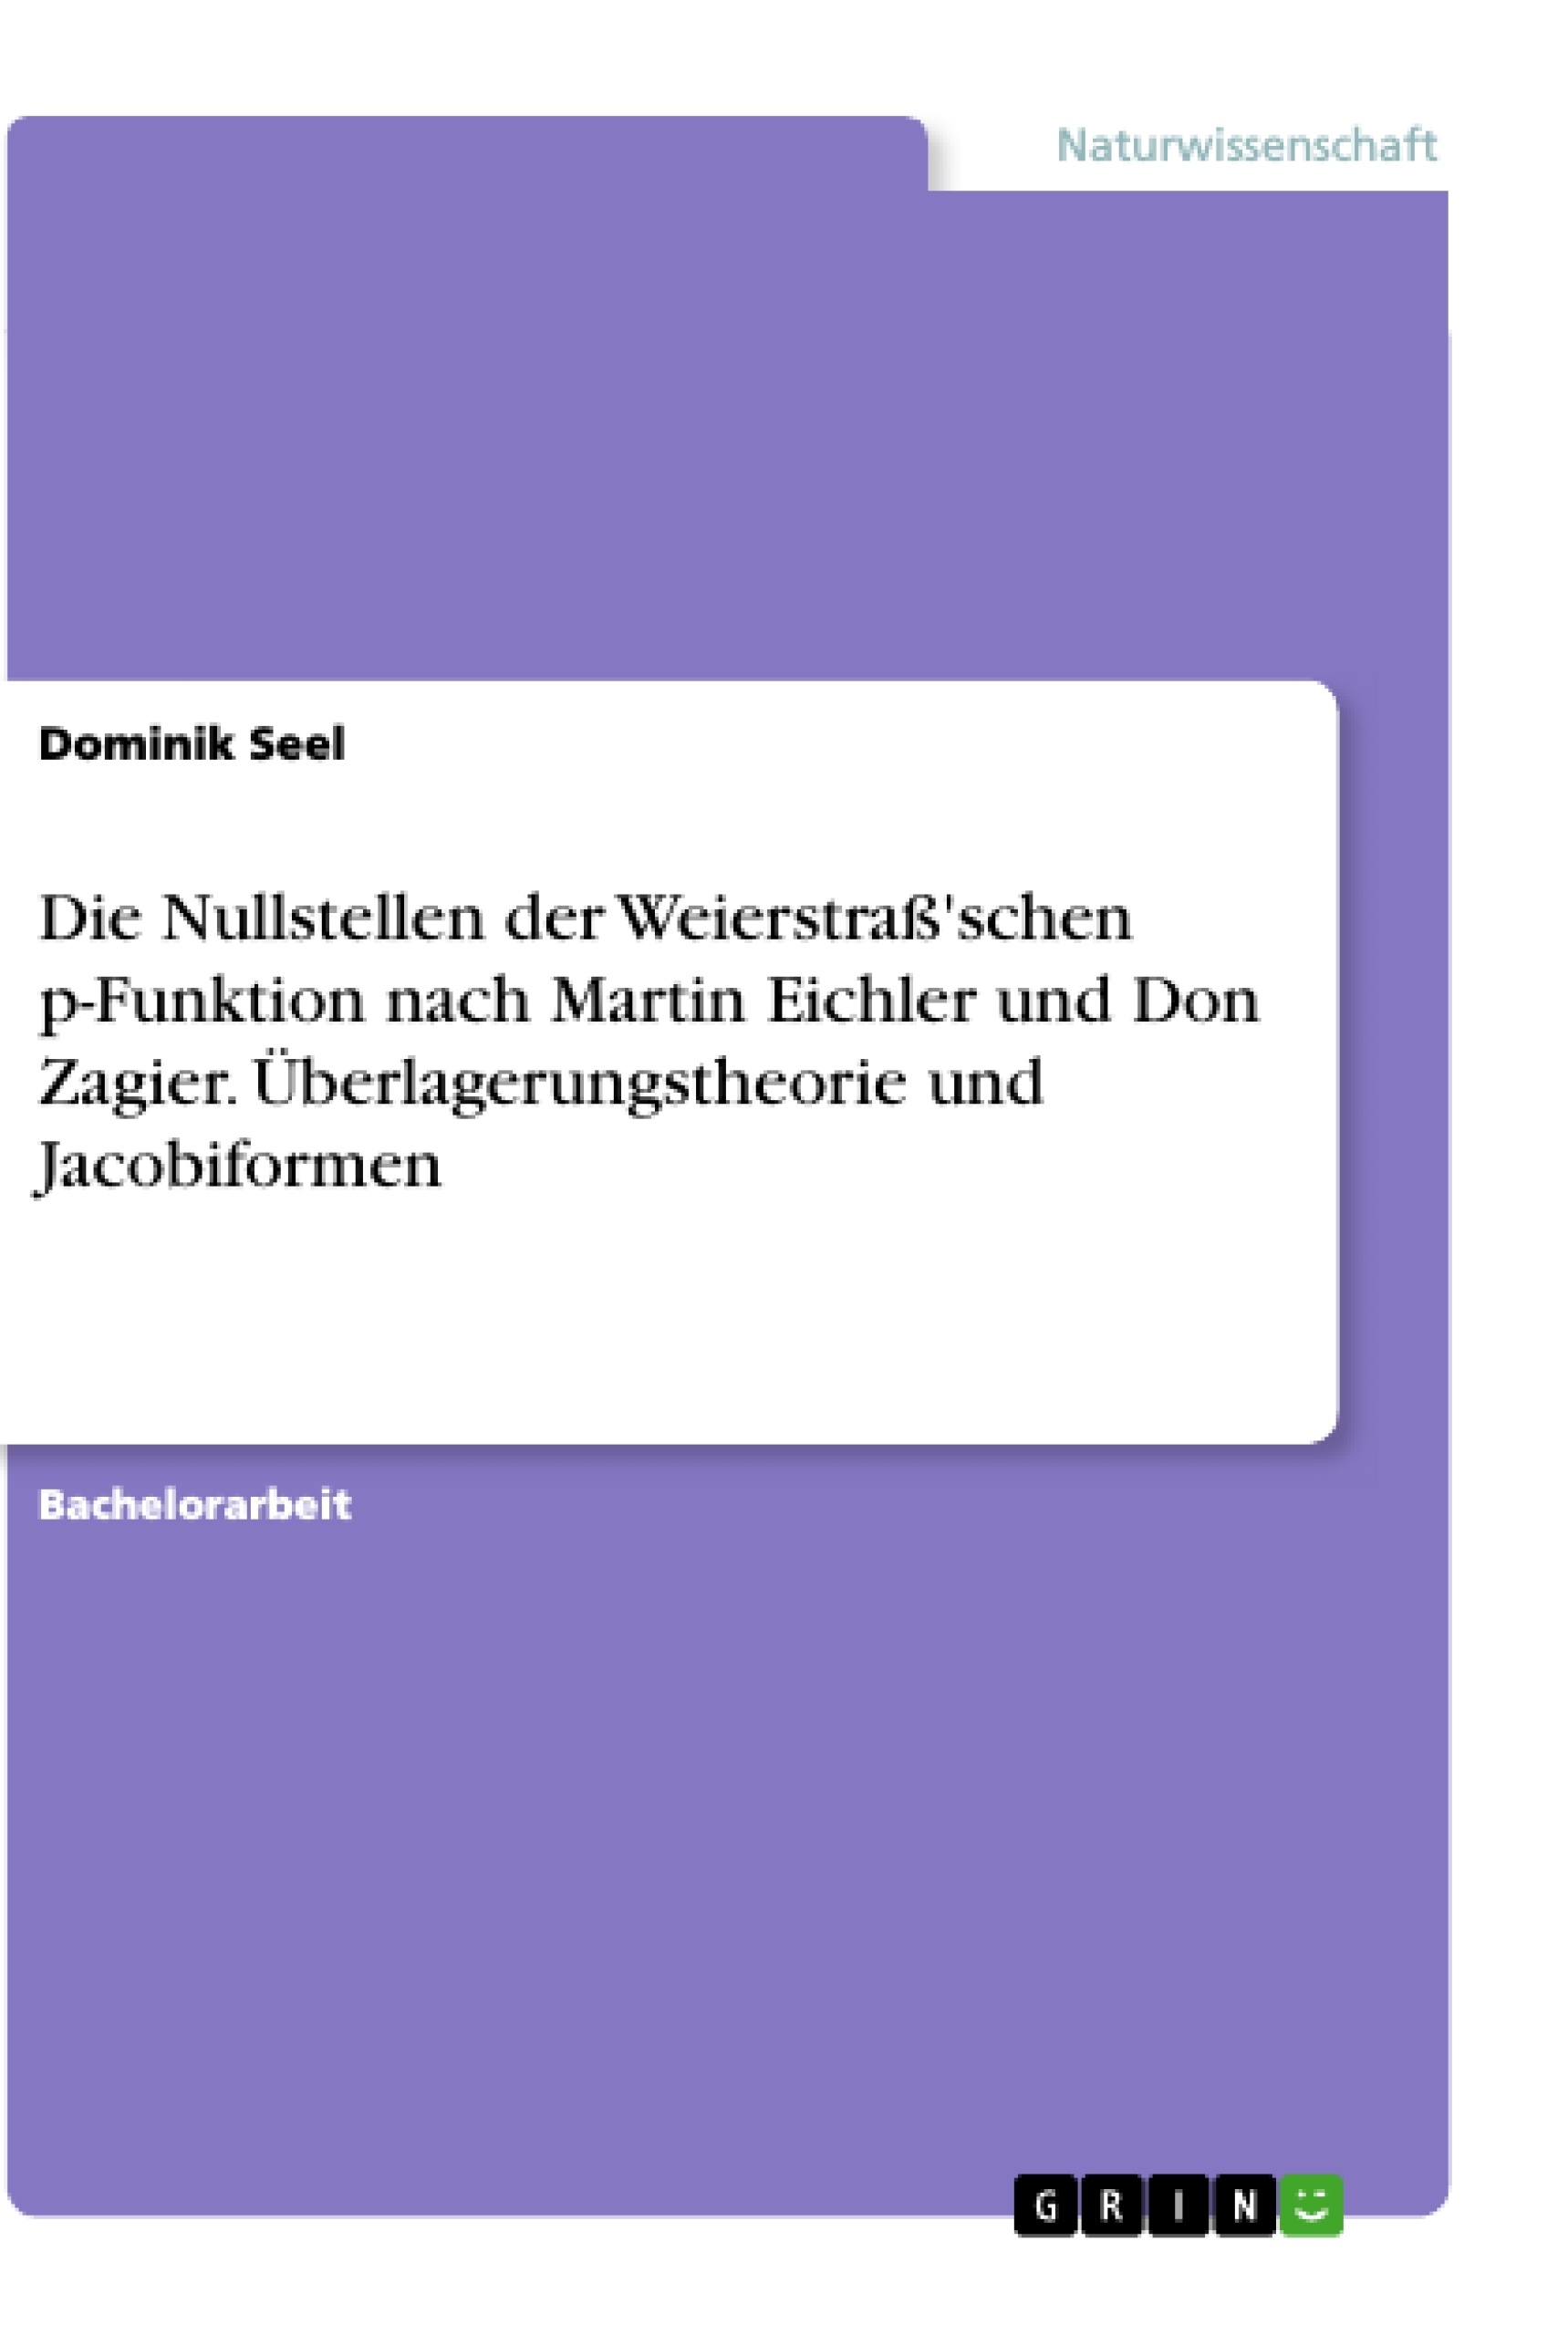 Title: Die Nullstellen der Weierstraß'schen p-Funktion nach Martin Eichler und Don Zagier. Überlagerungstheorie und Jacobiformen